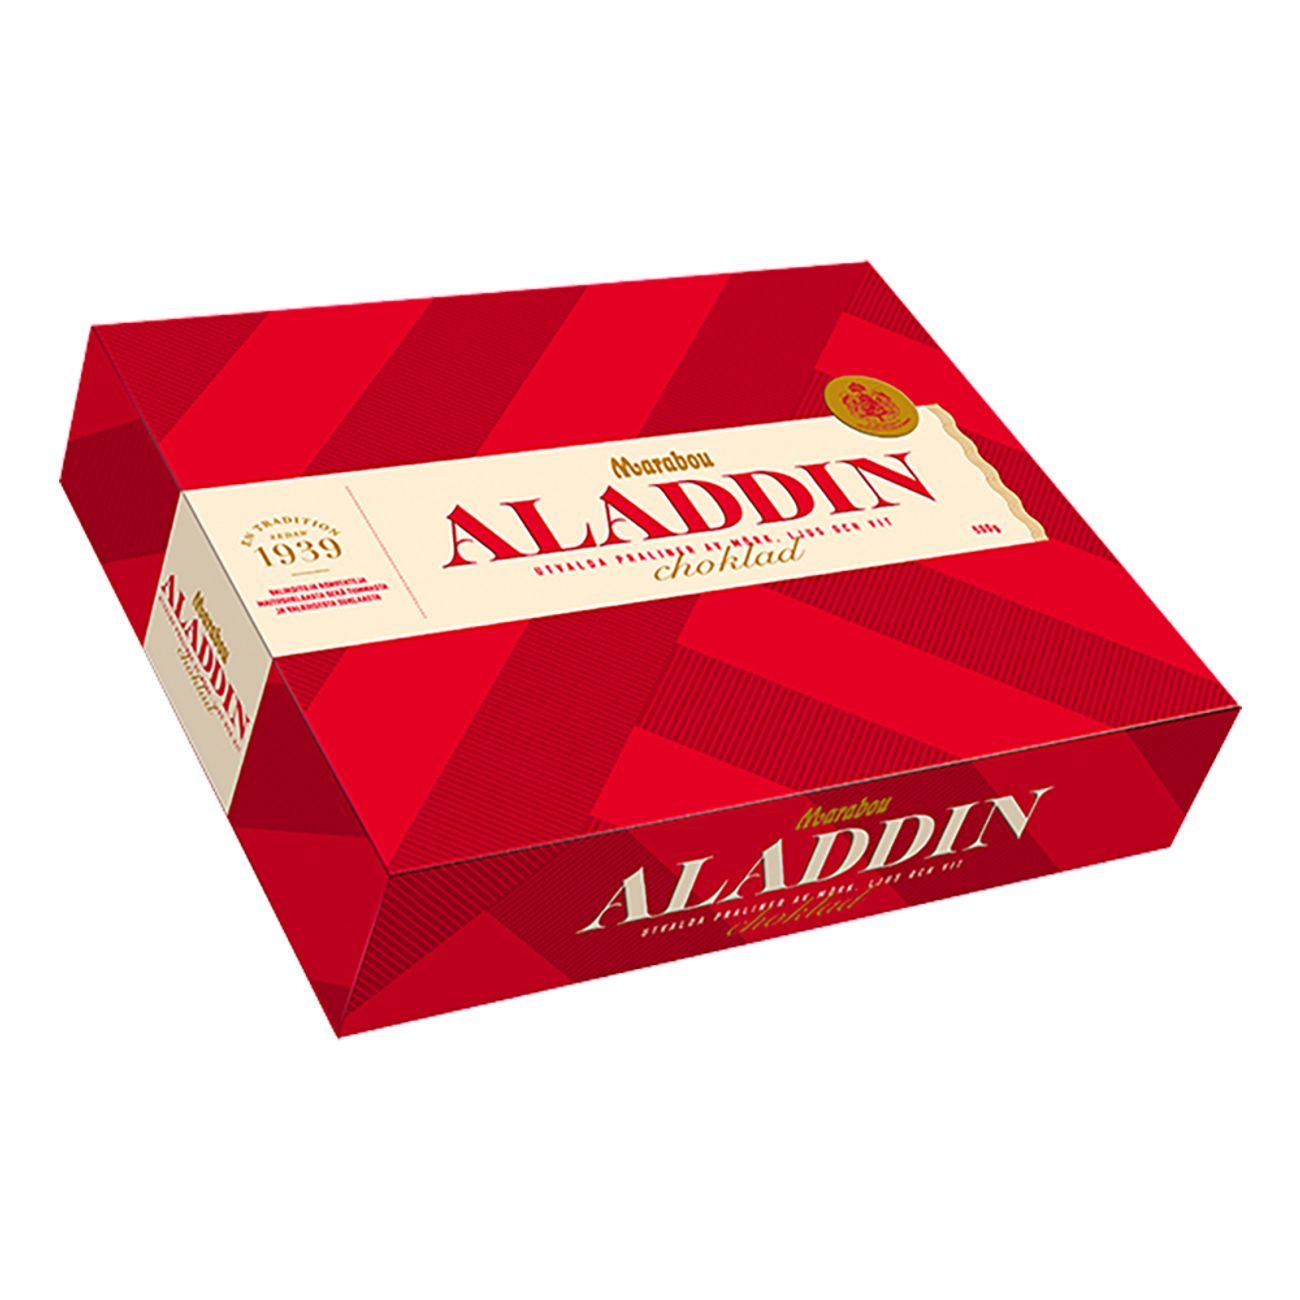 aladdin-chokladask-99221-1